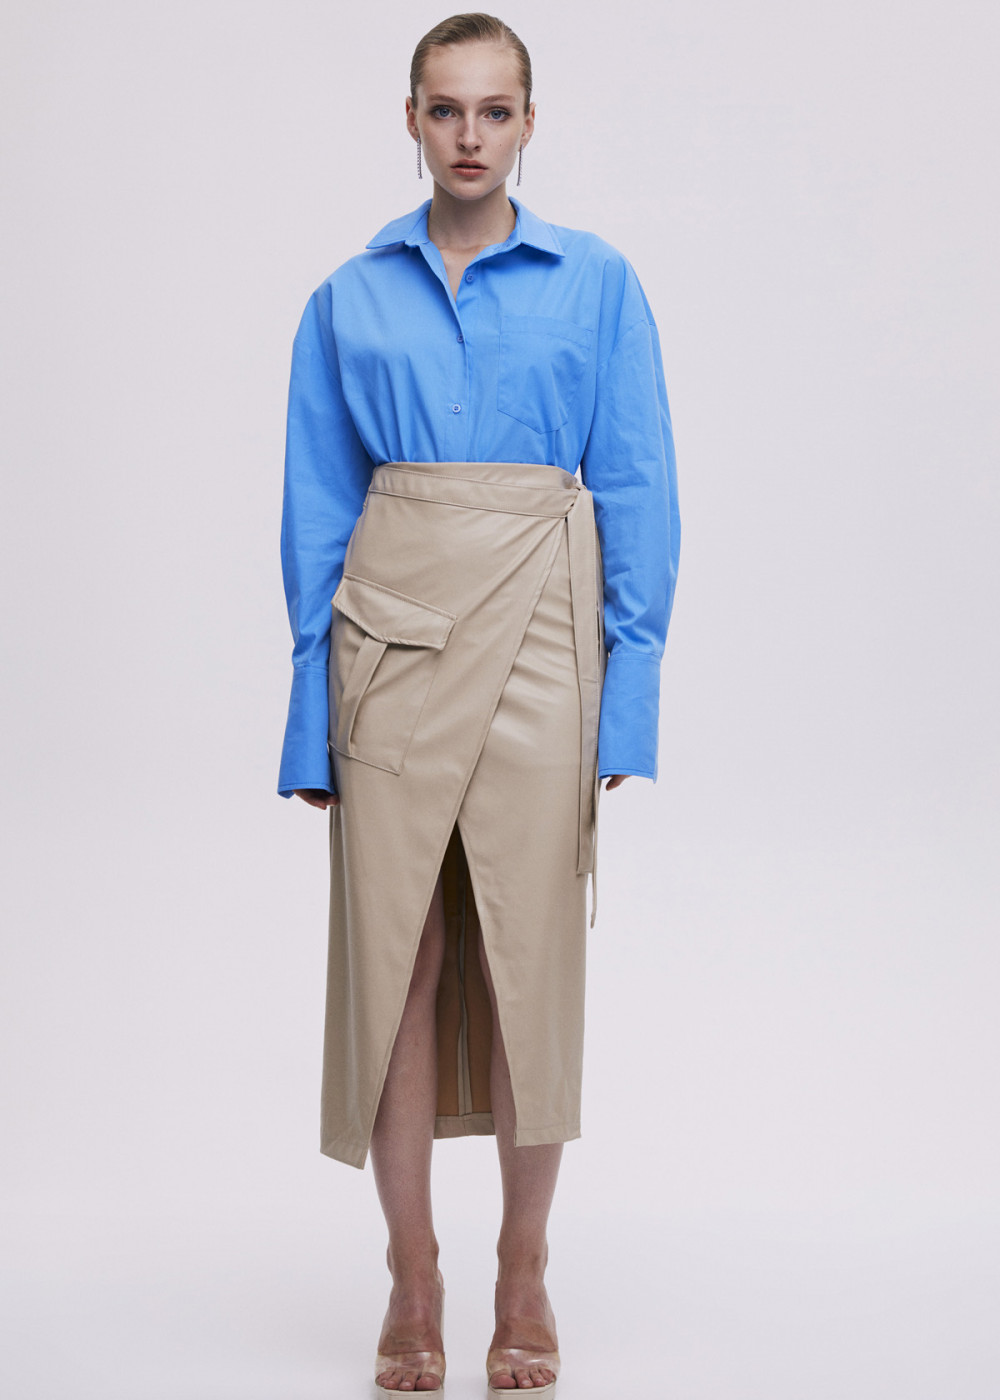 Leather Wrap Midi Skirt